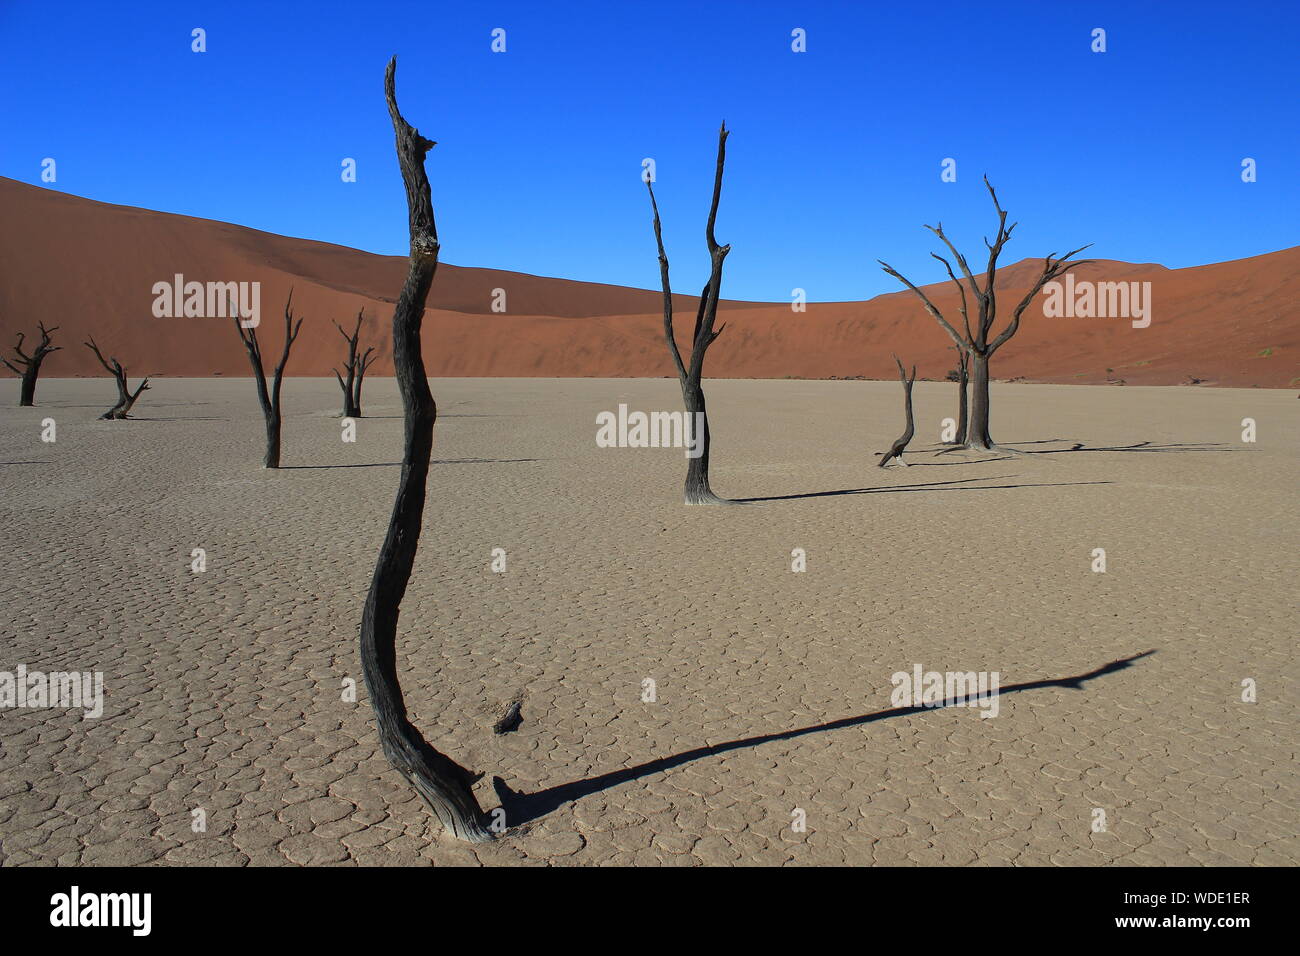 Dead Vlei è un argilla bianca basin nel deserto del Namib in Namibia. I tronchi di alberi che sono morti 900 anni fa diffondere le loro ombre. Foto Stock